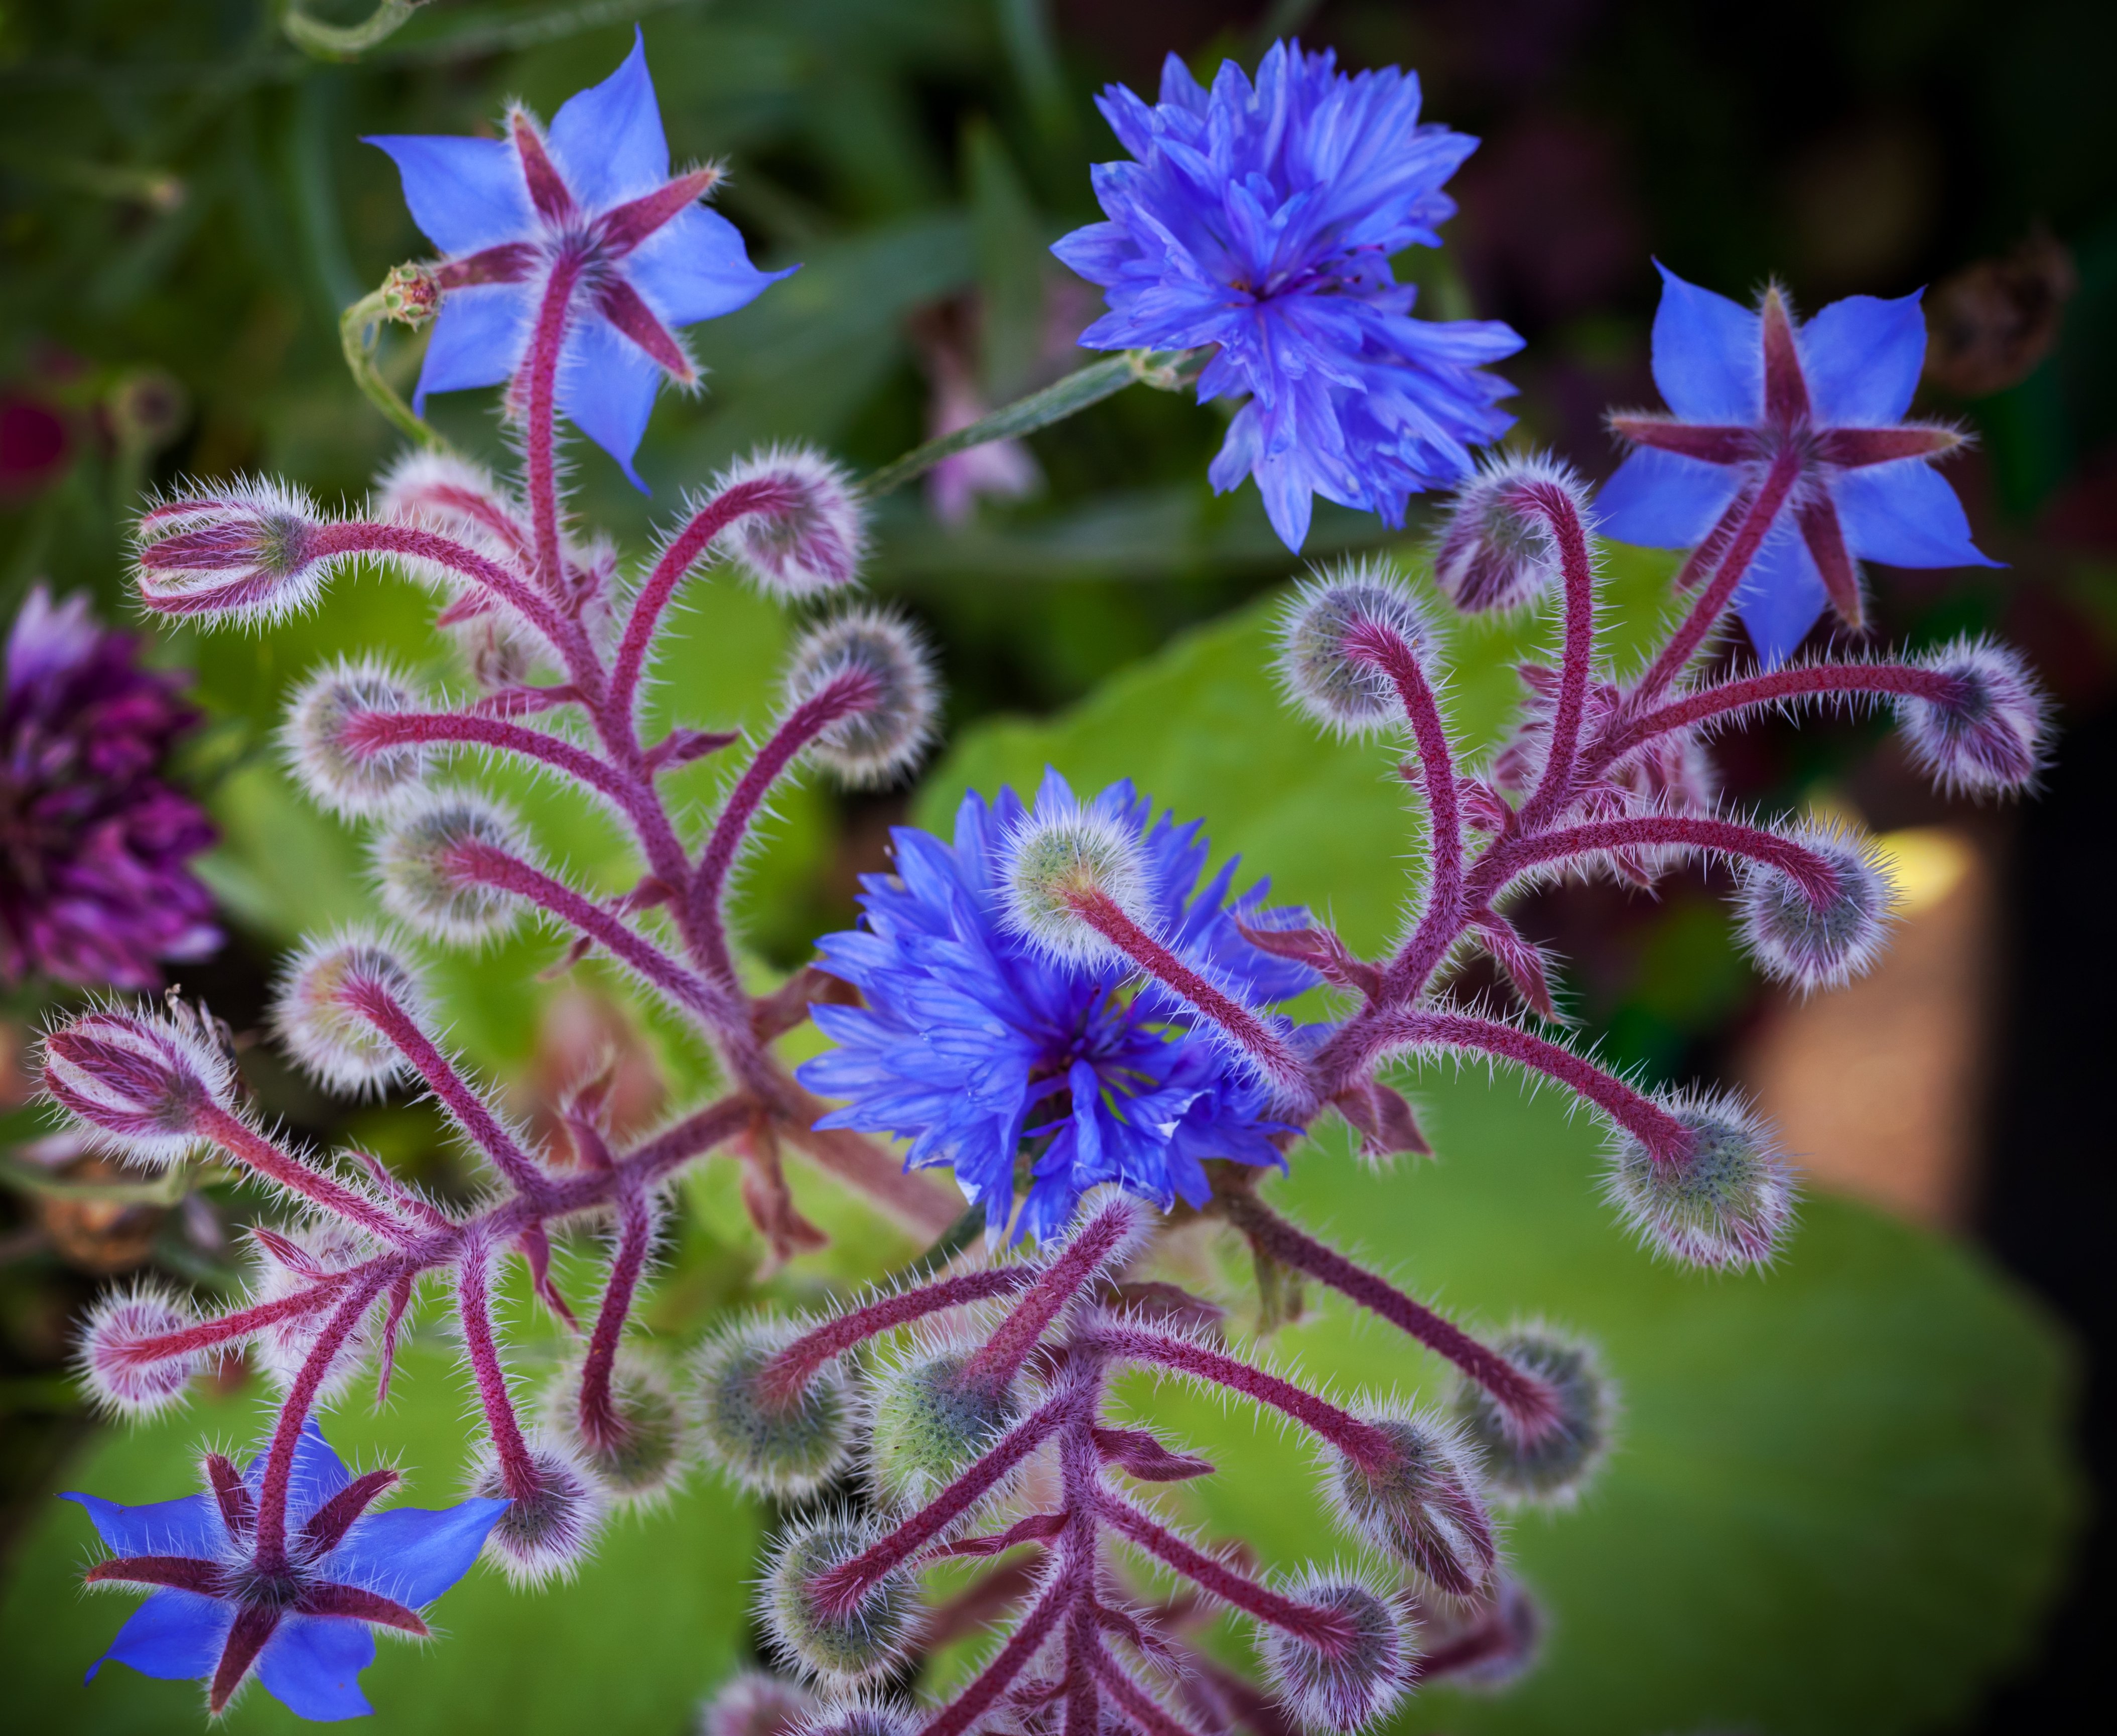 令人难以置信的紫绒花蕾和琉璃苣的花朵